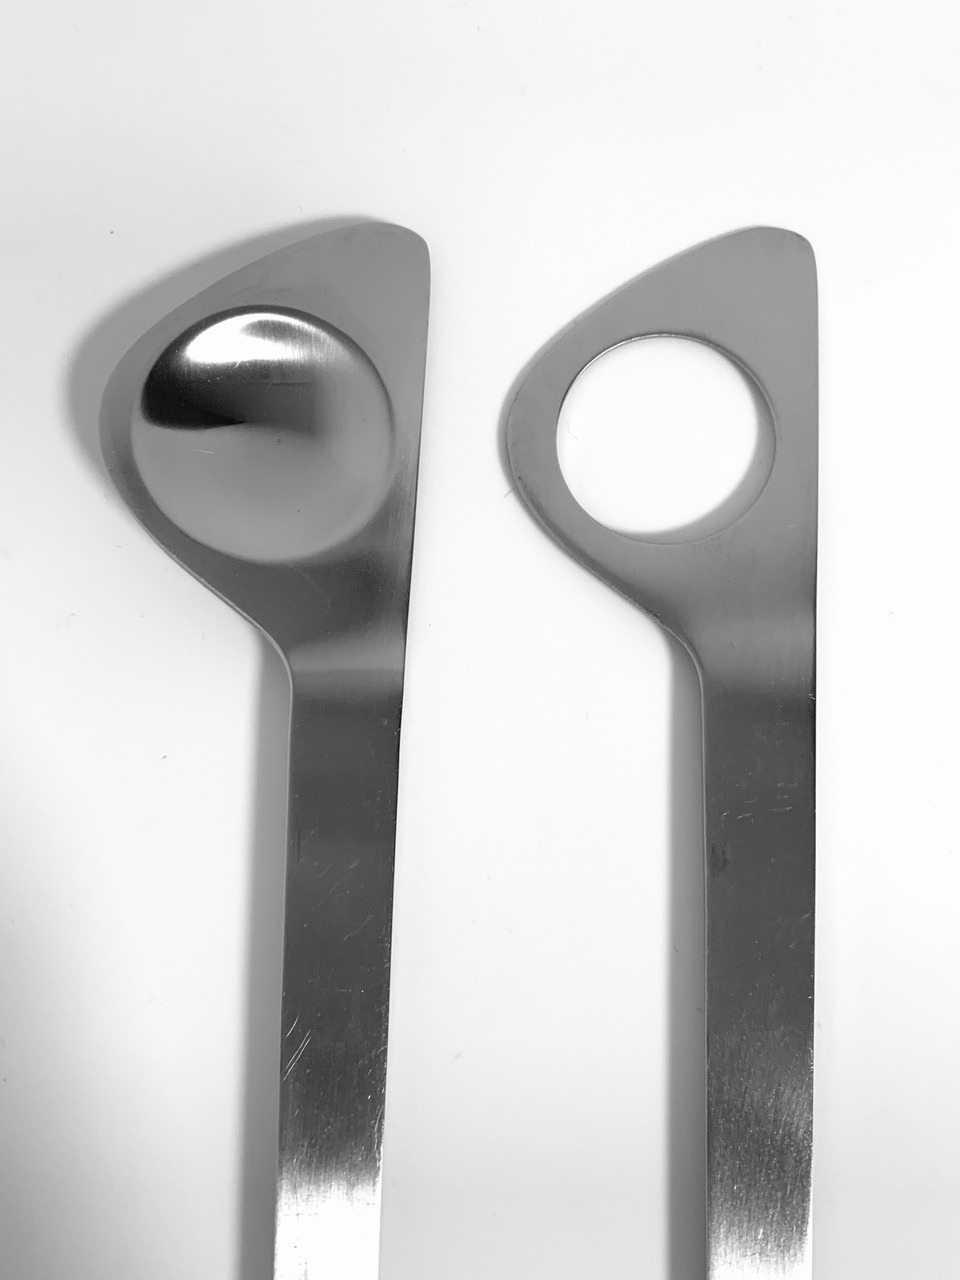 Afbeelding van de Stelton slabestek ontworpen door Arne Jacobsen die in deze advertentie wordt aangeboden.